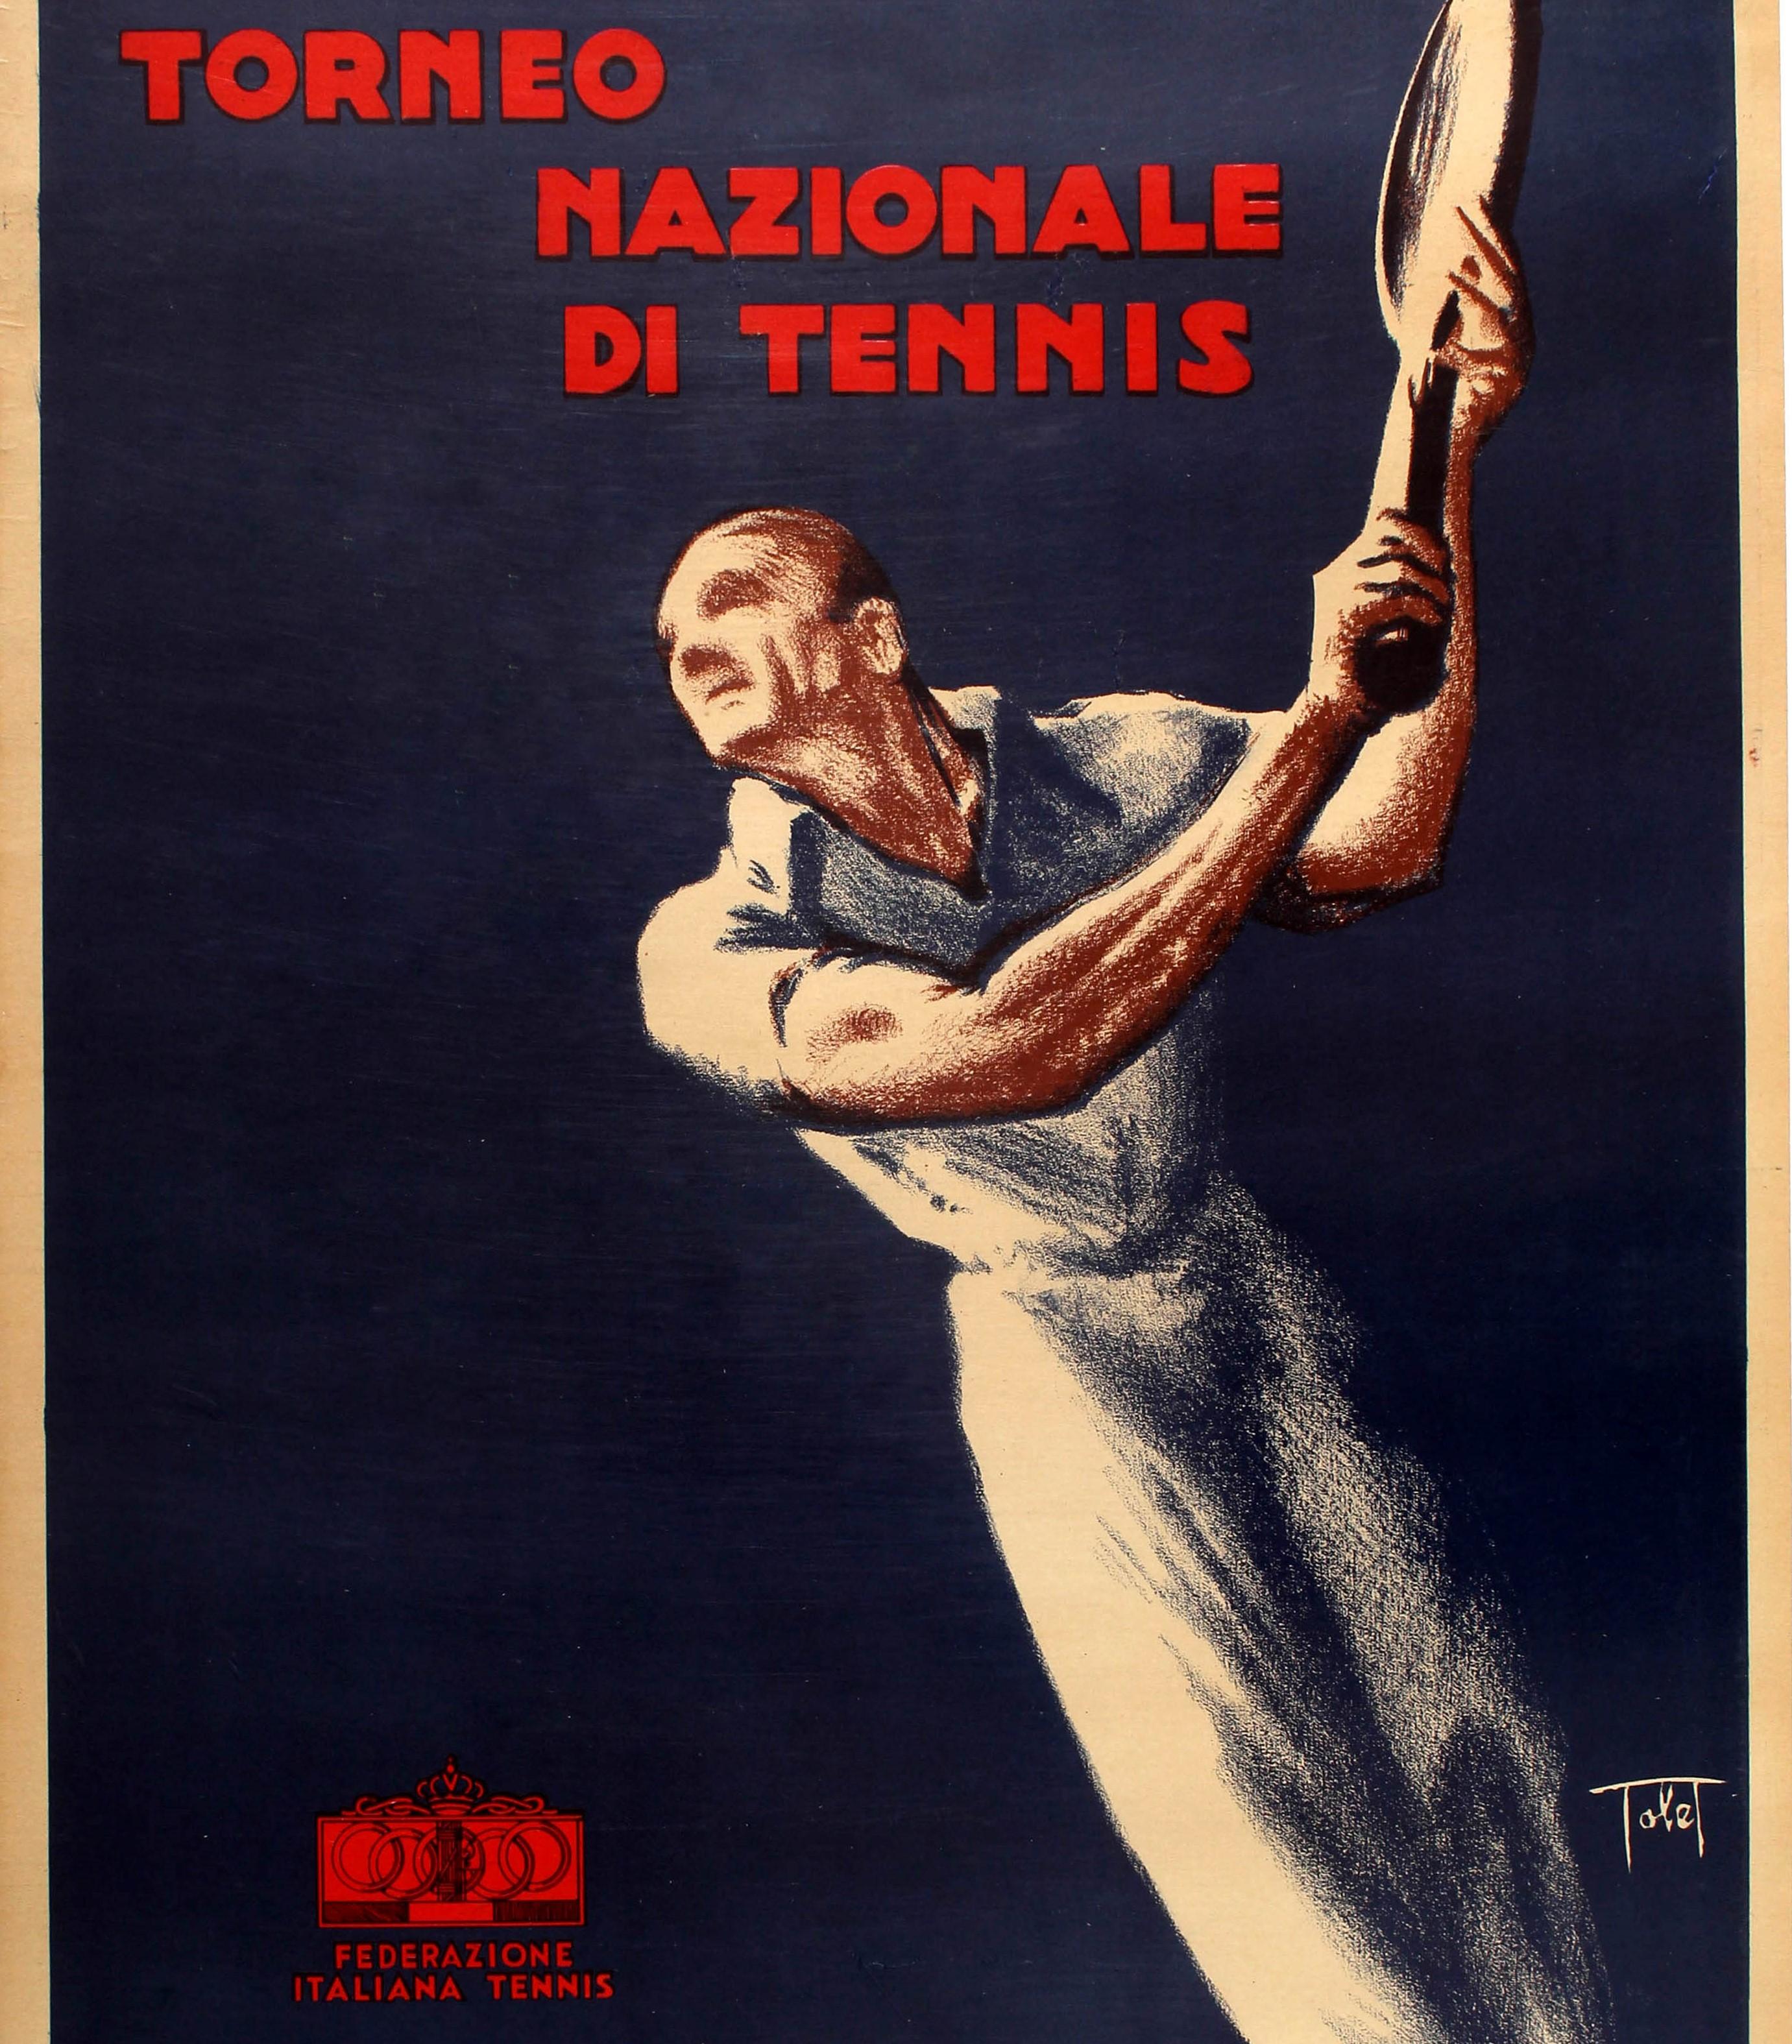 Original Vintage-Sportplakat für das Torneo Nazionale Di Tennis / Nationales Tennisturnier, herausgegeben vom Italienischen Tennisverband, mit einer dynamischen Illustration im Art-déco-Stil eines Tennisspielers in weißem Hemd und Hose vor blauem